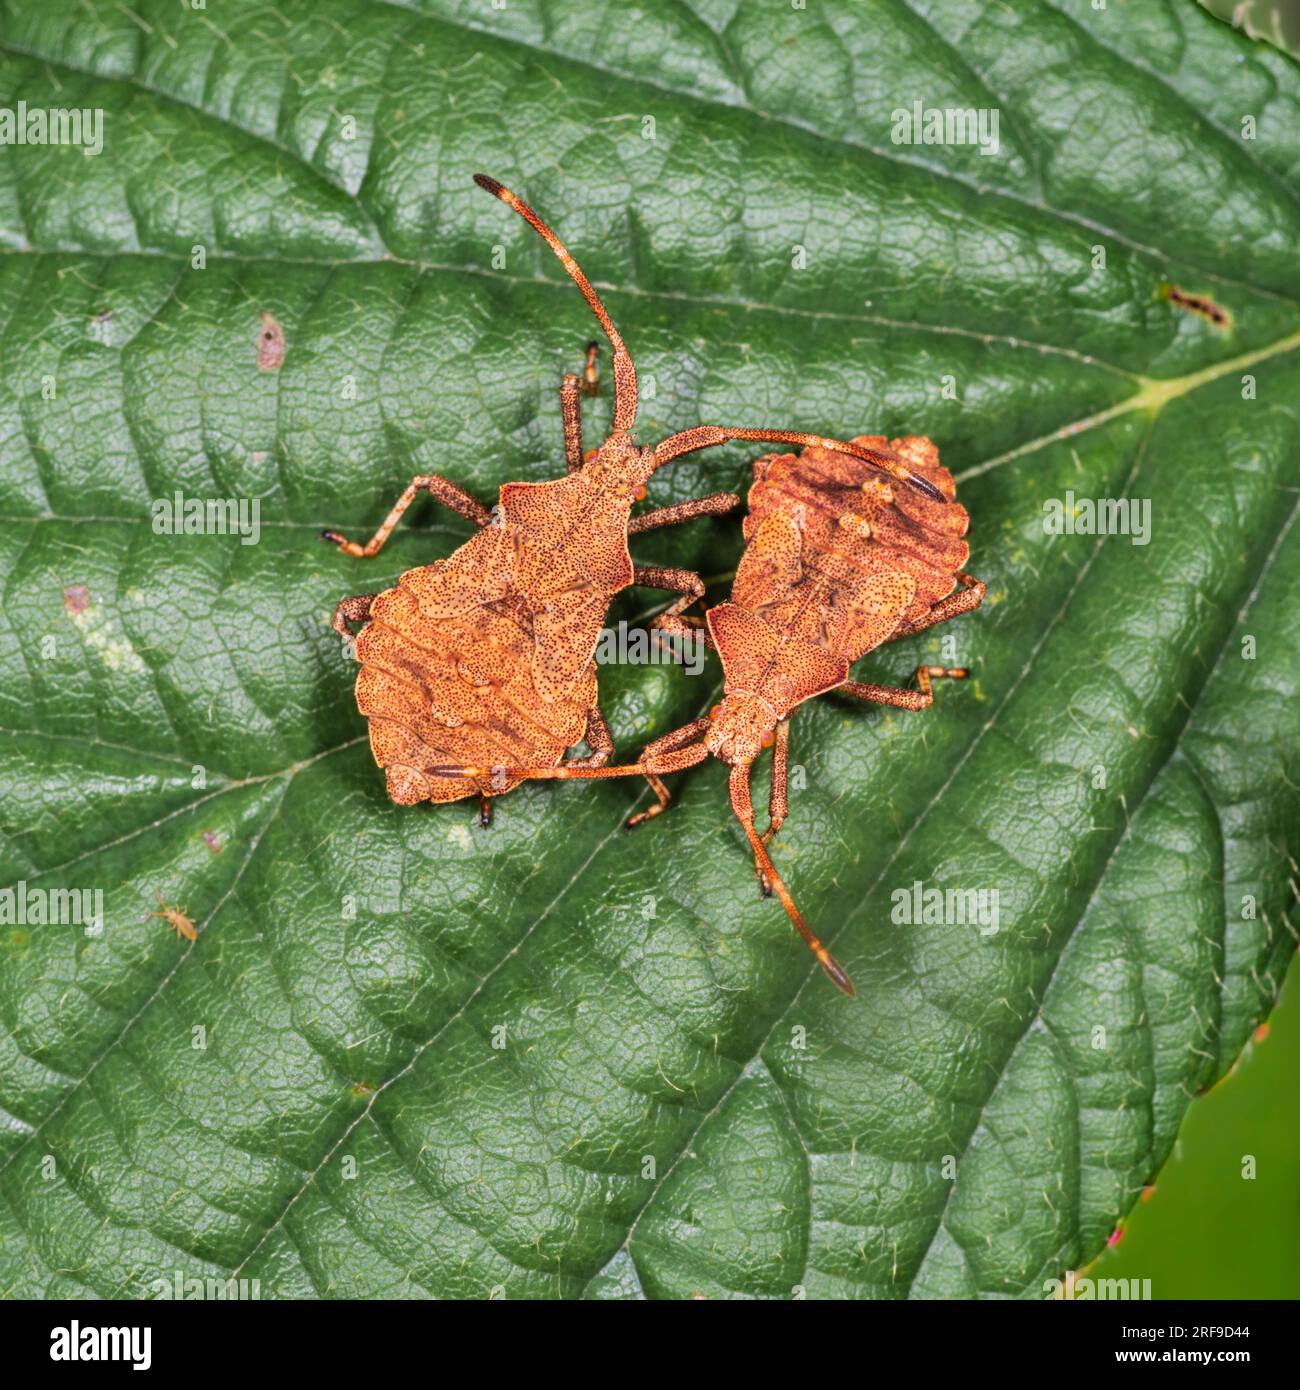 Le ninfe di ultima istanza dello squashbug britannico Coreus marginatus, Dock bug Foto Stock